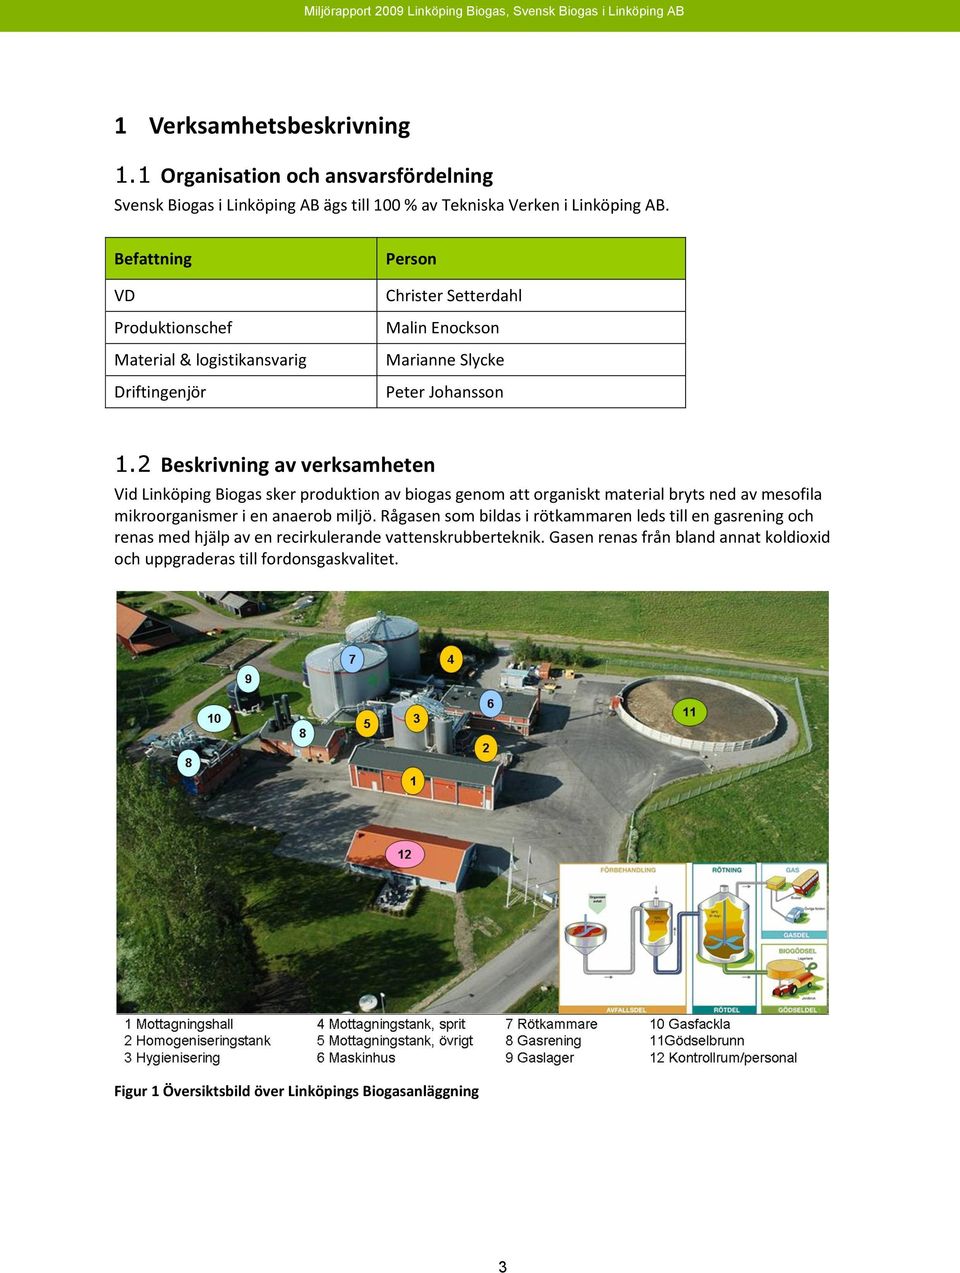 2 Beskrivning av verksamheten Vid Linköping Biogas sker produktion av biogas genom att organiskt material bryts ned av mesofila mikroorganismer i en anaerob miljö.